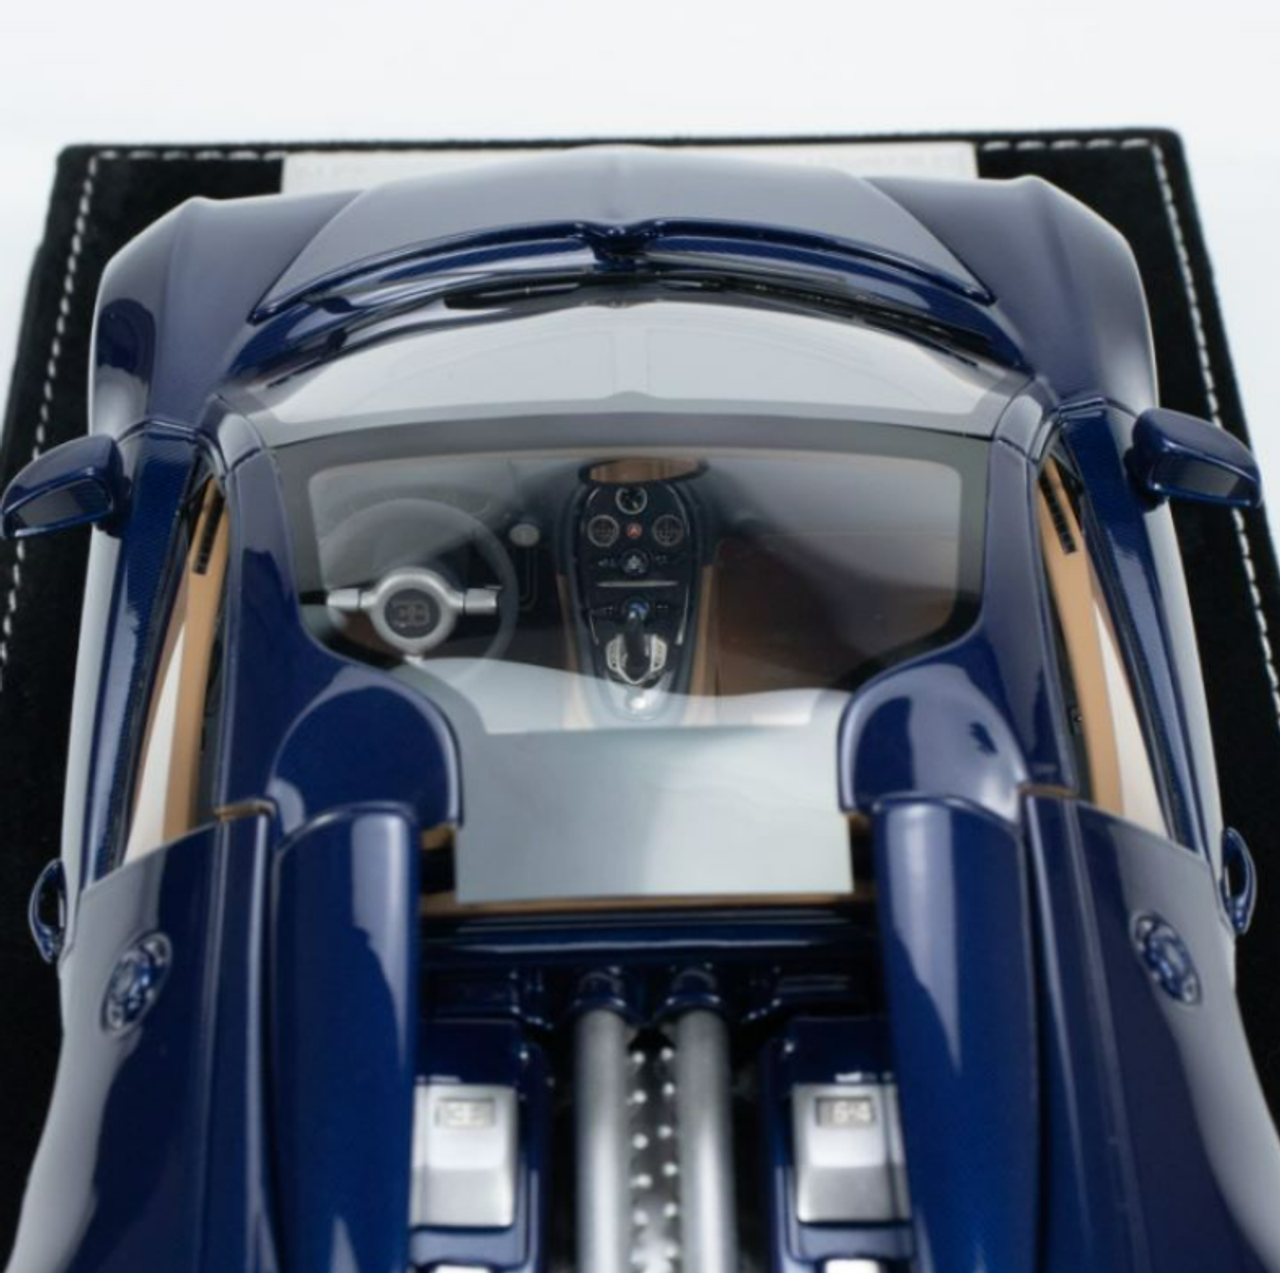 1/18 HH Model Bugatti Veyron Blue Carbon (Limit 20 Pieces)